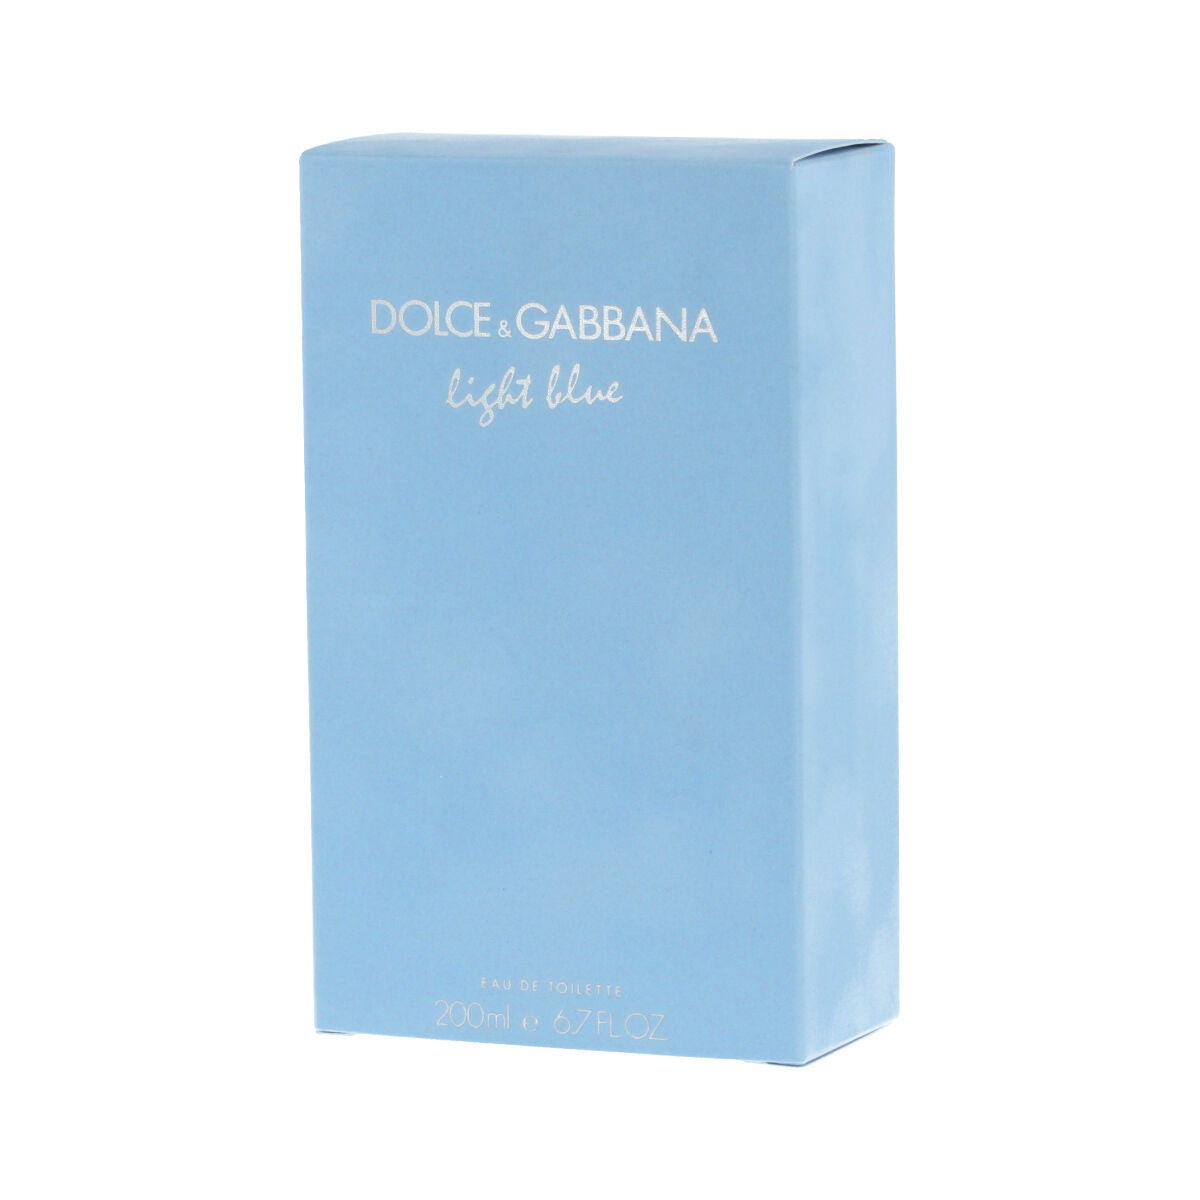 Parfum Femme Dolce & Gabbana EDT Light Blue 200 ml